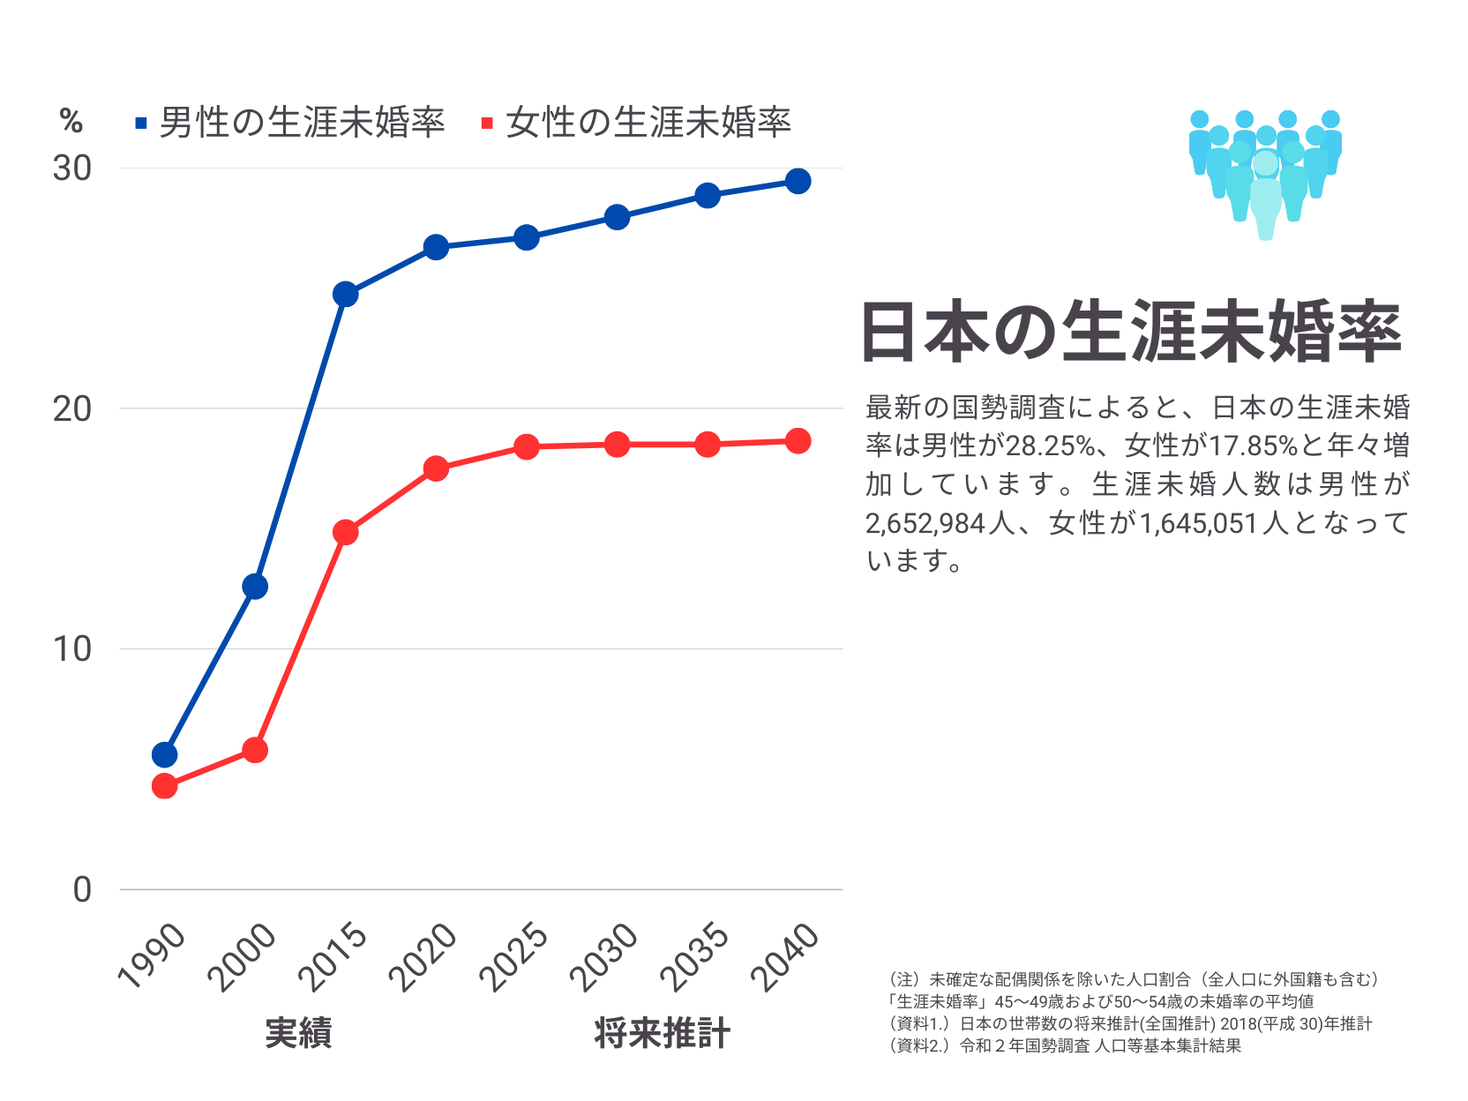 【2023年最新】日本の「未婚」「独身」を調査 日本全体の未婚者は32,790,076人、生涯未婚率は男性が28.25%、女性が17.85%